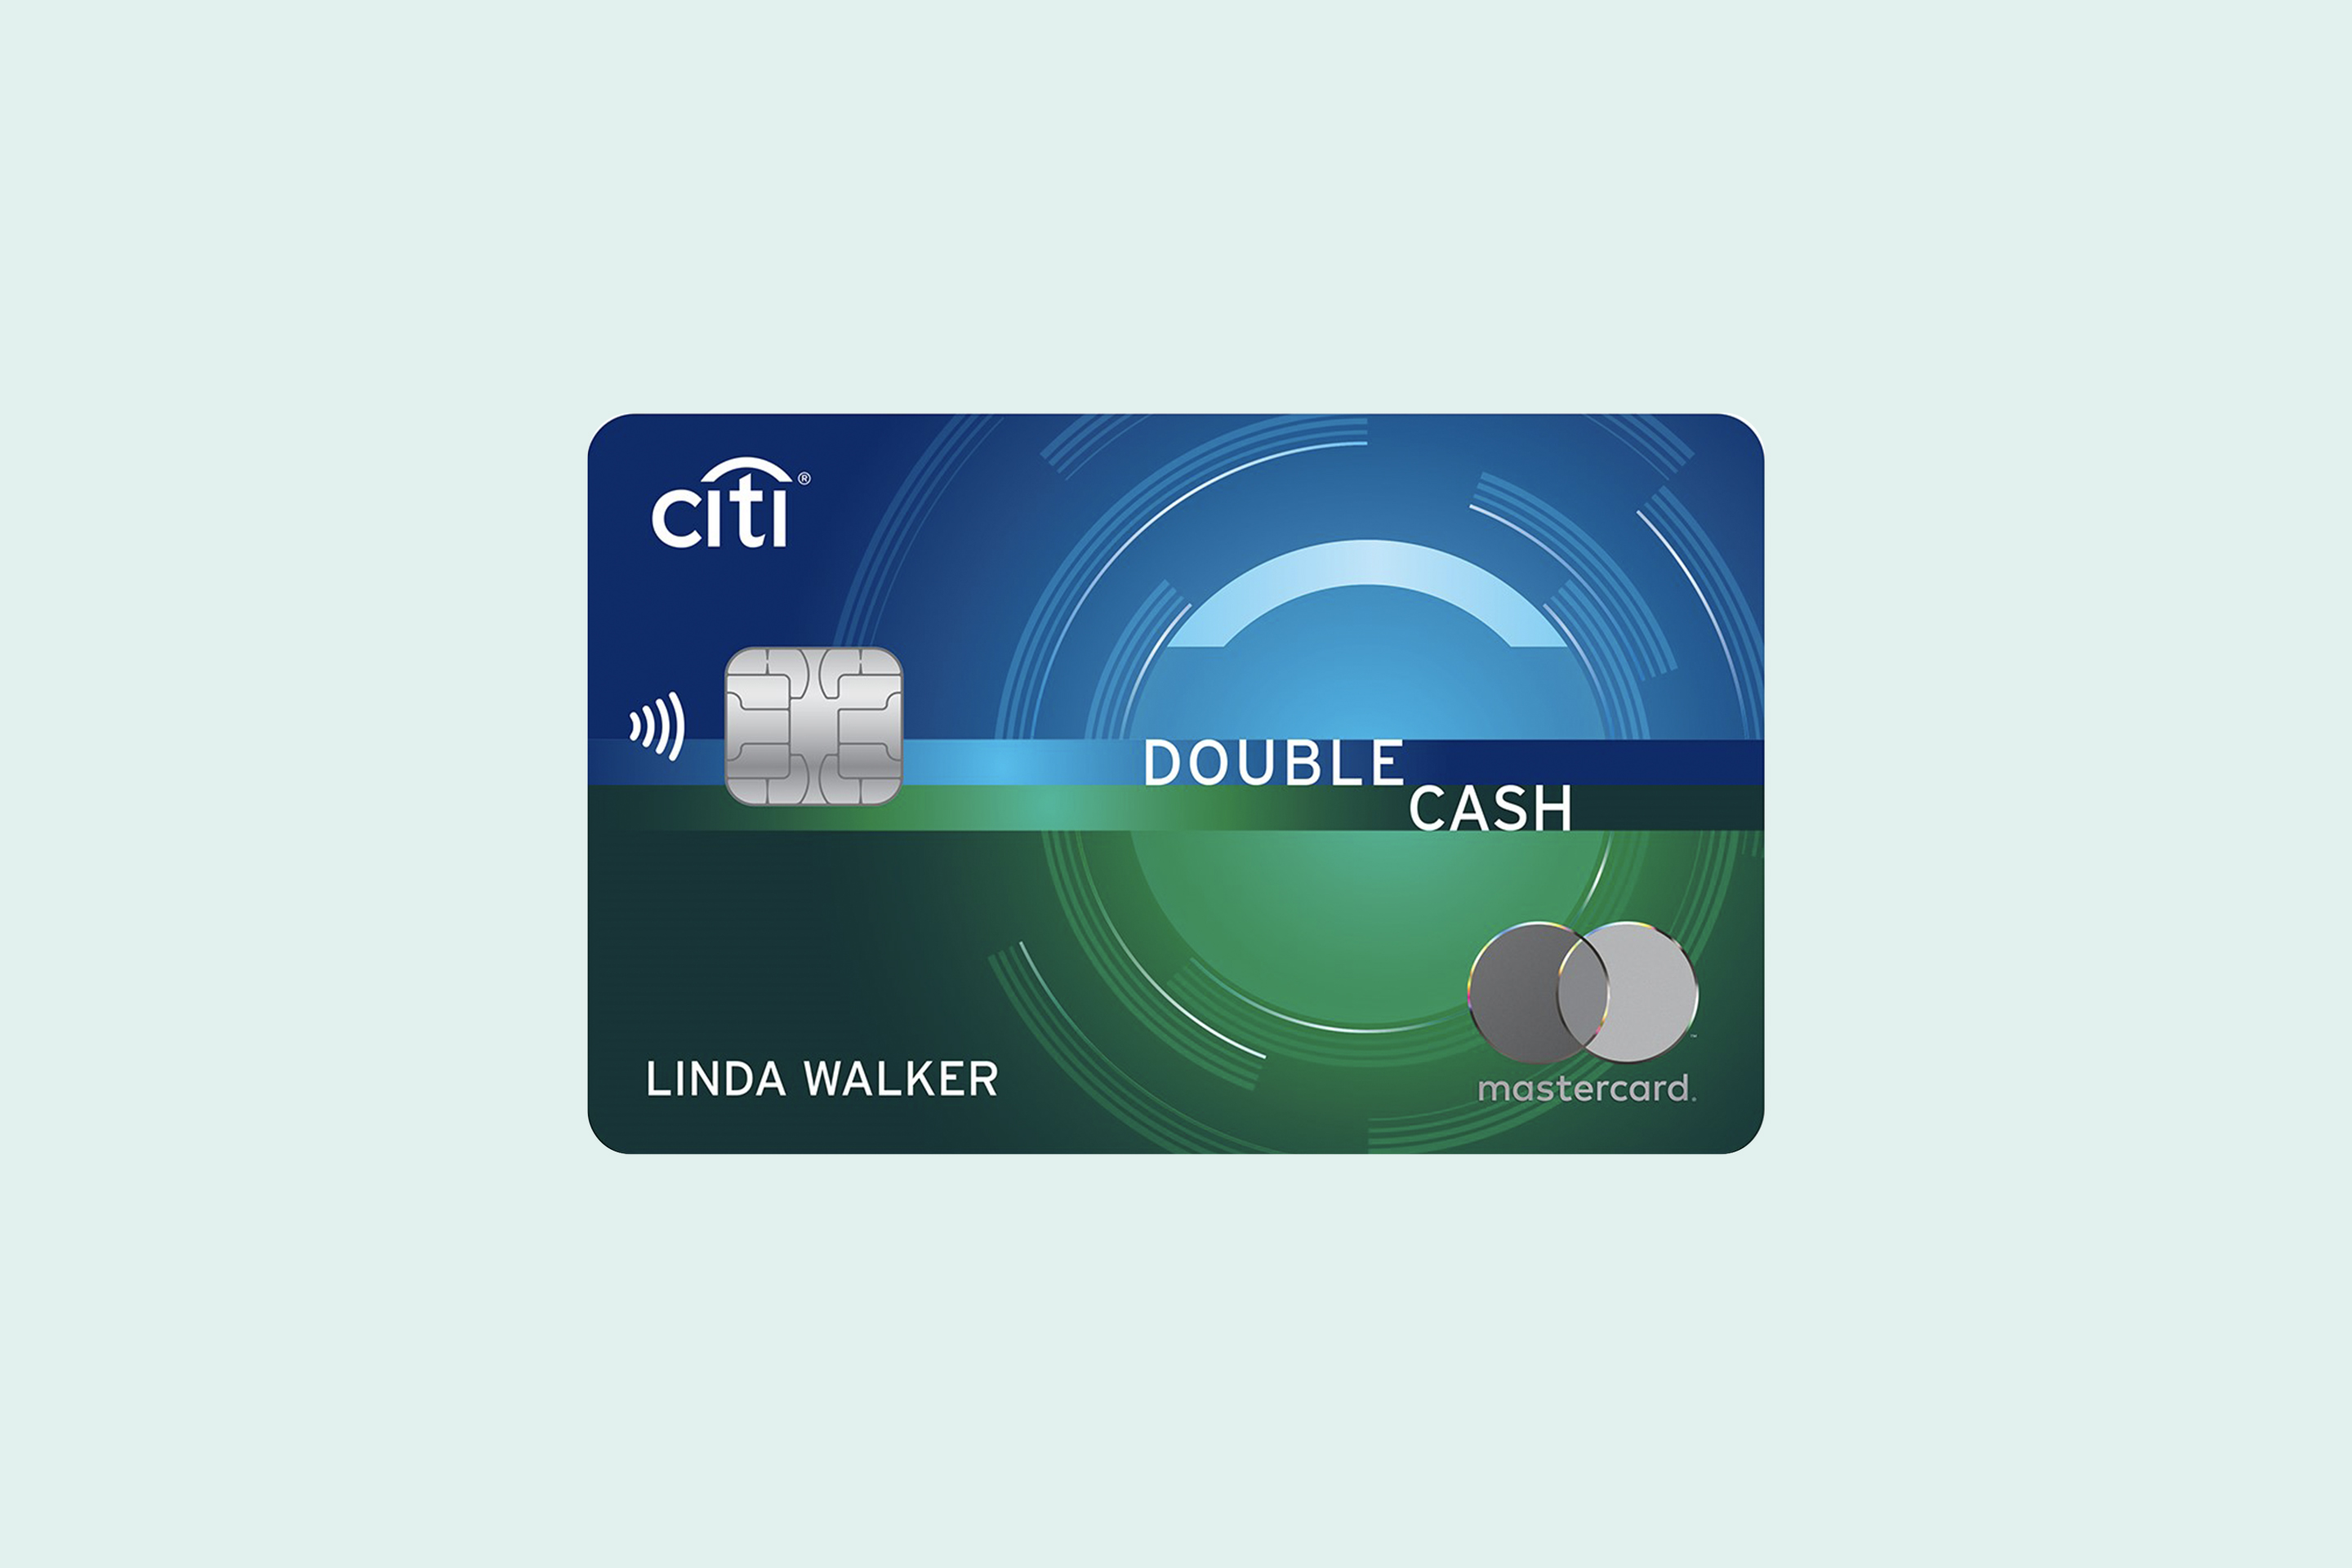 eingang-buchhalter-leeds-1-cash-back-credit-card-pubert-t-komfortabel